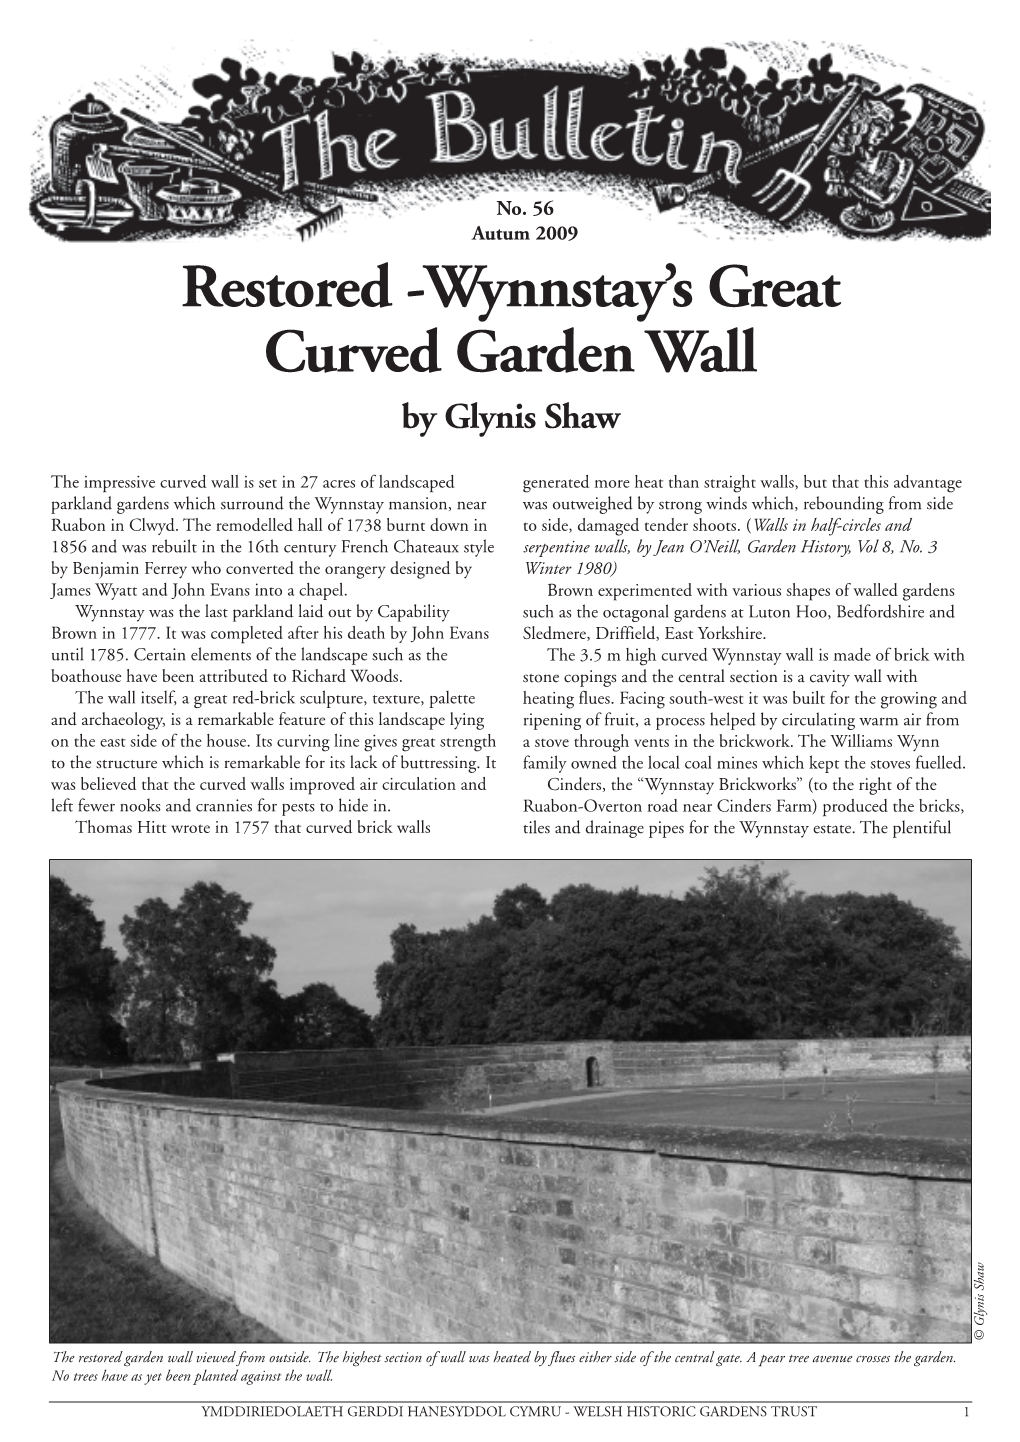 Wynnstay's Great Curved Garden Wall